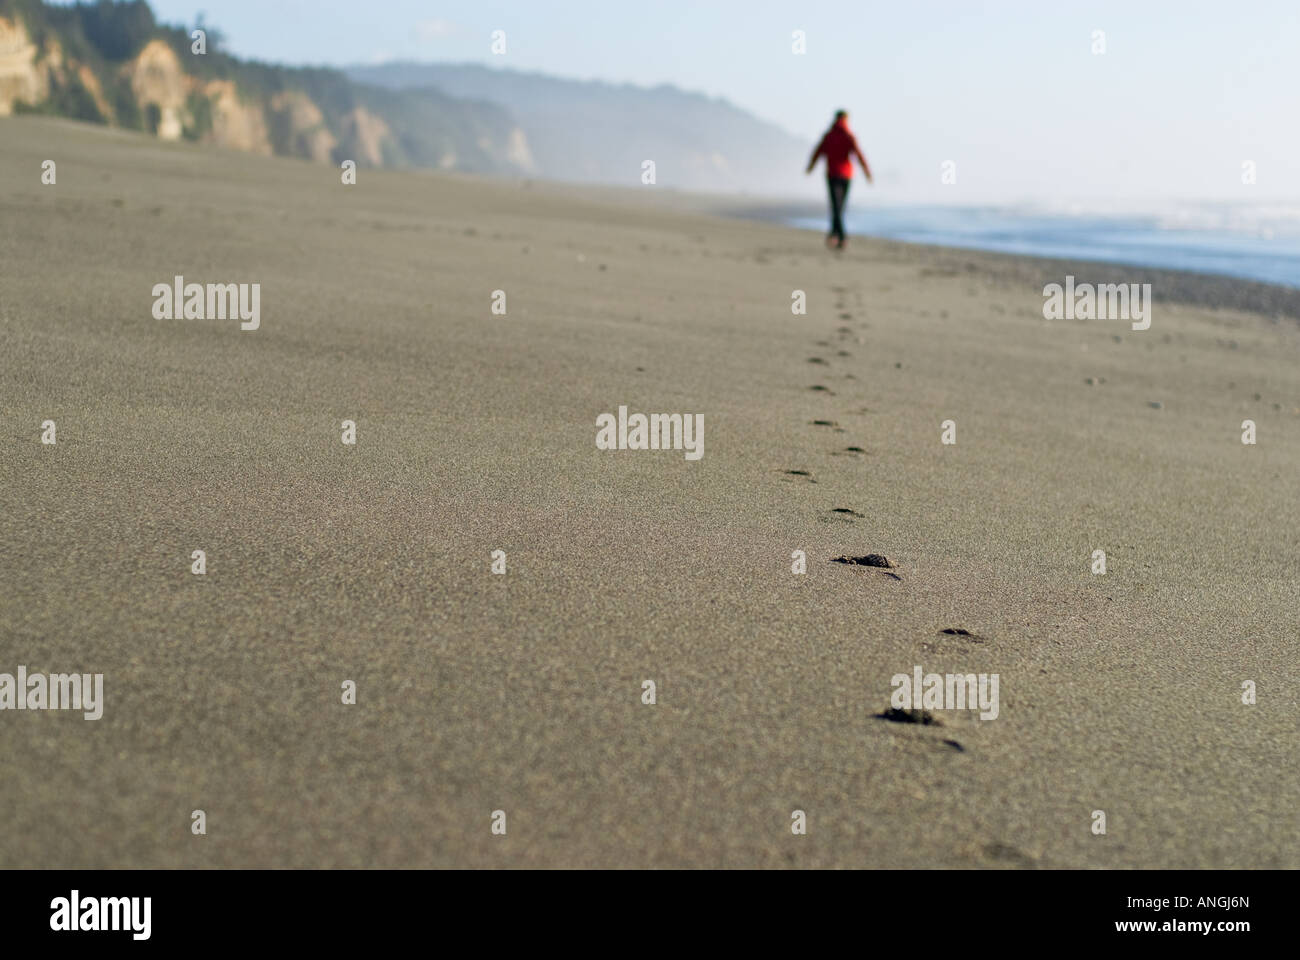 Empreintes de femme marchant sur la plage vide Bluffs or camping sur la côte de la Californie du nord des prairies isolées dans des séquoias Banque D'Images